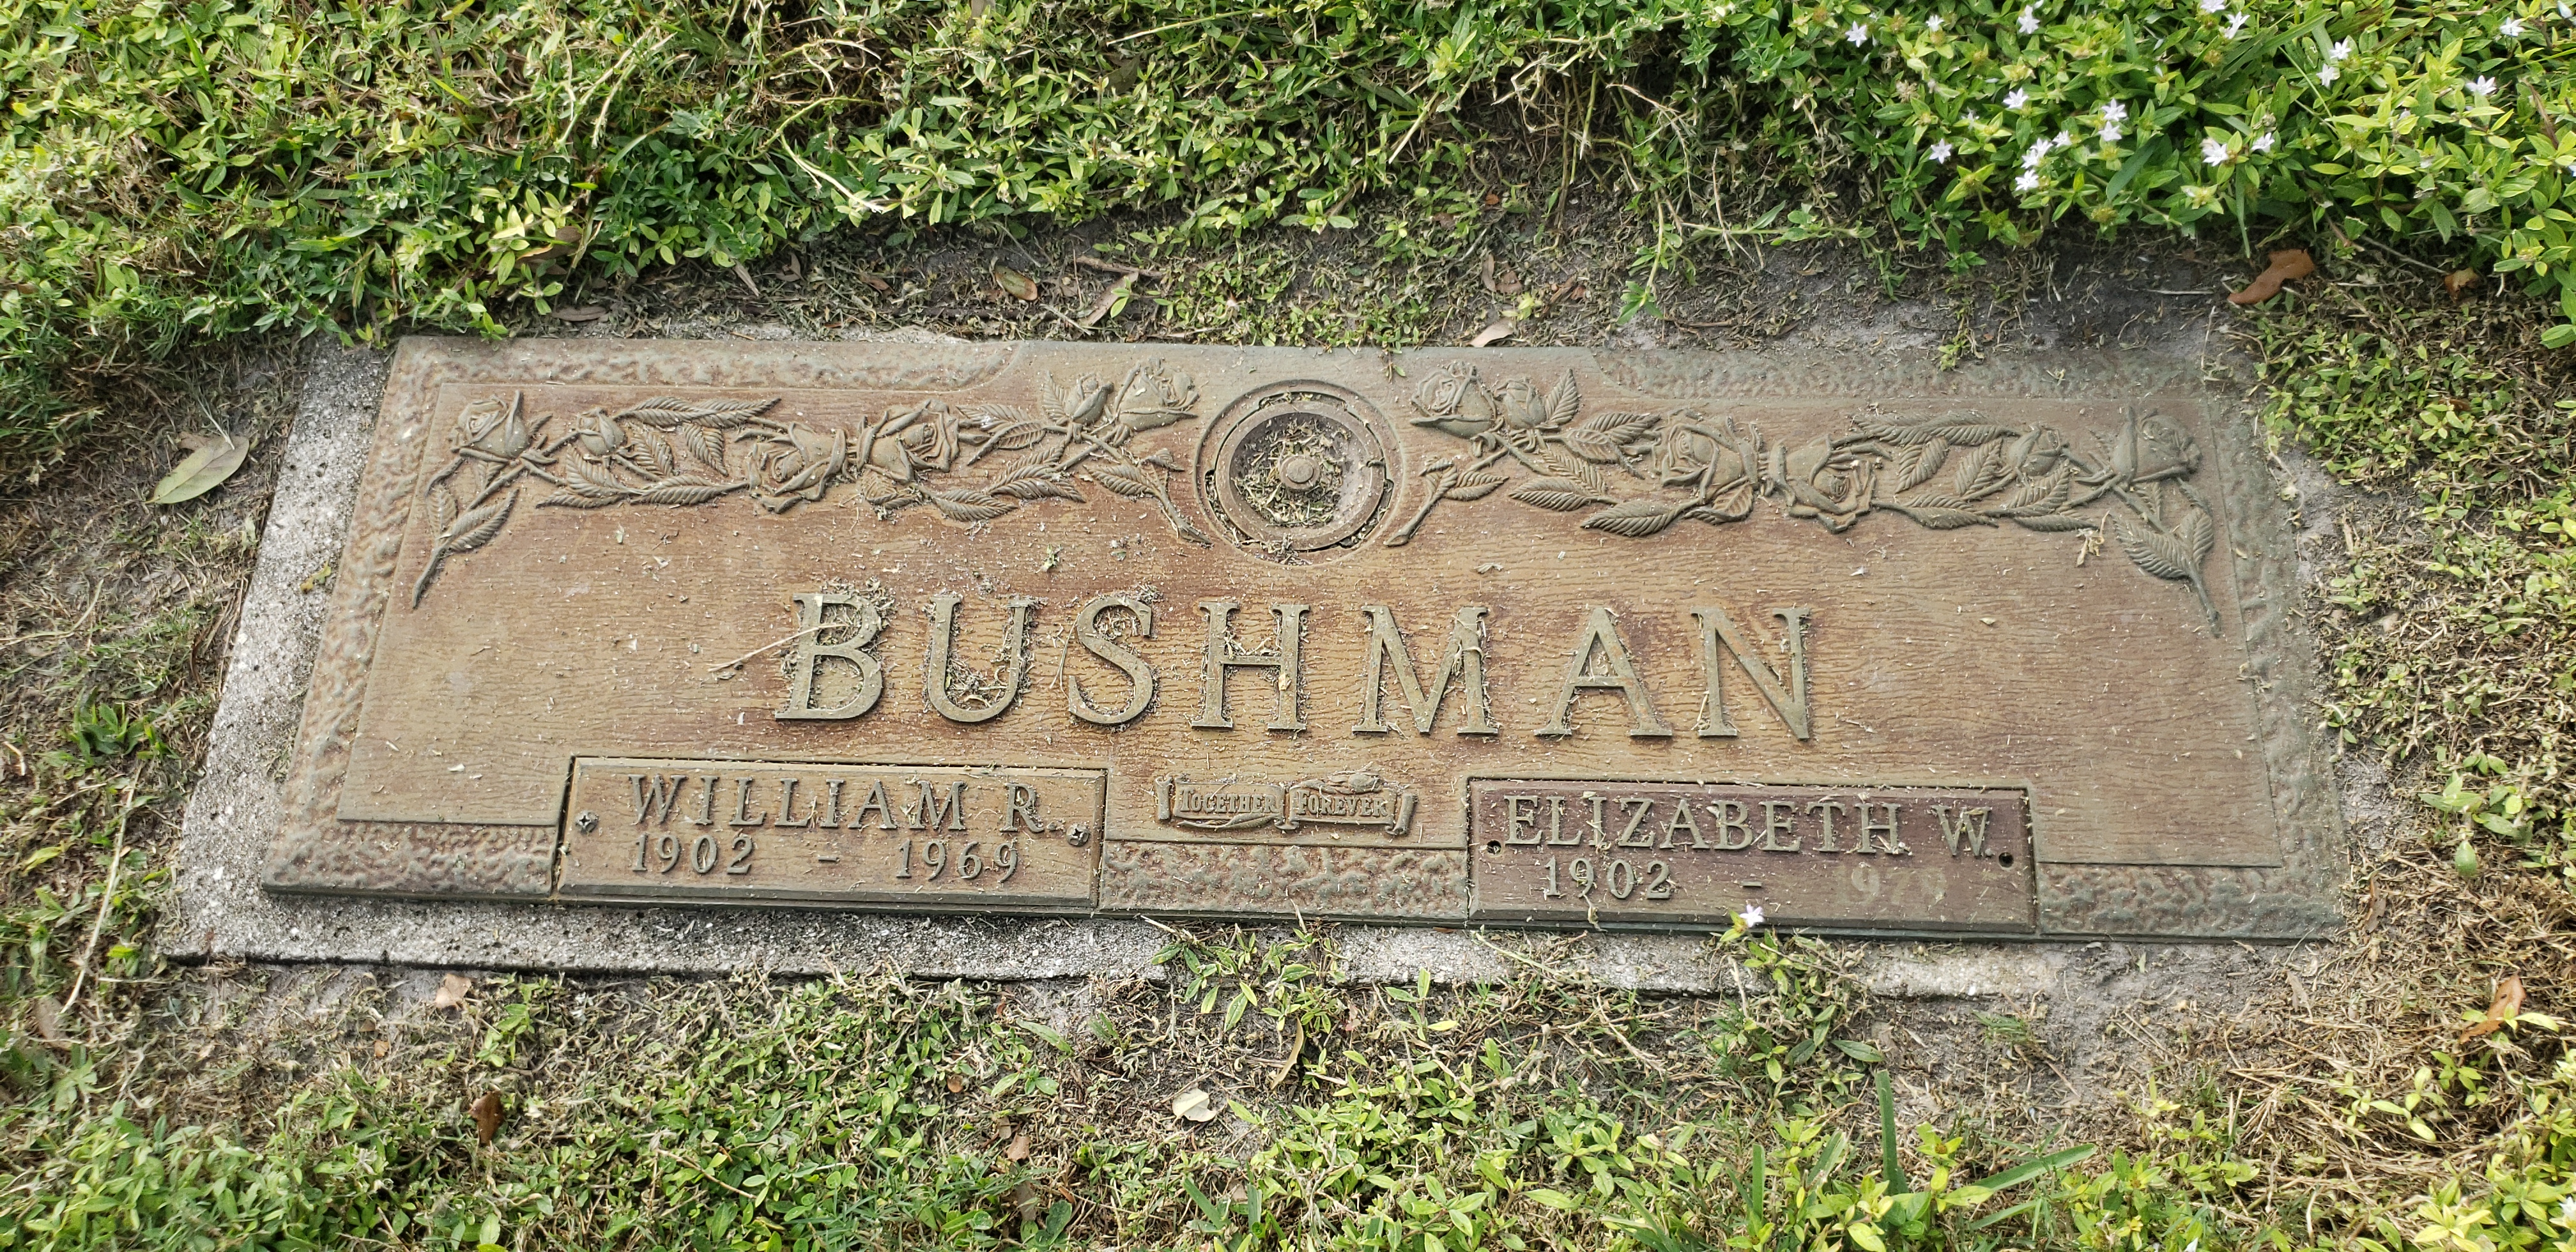 William R Bushman